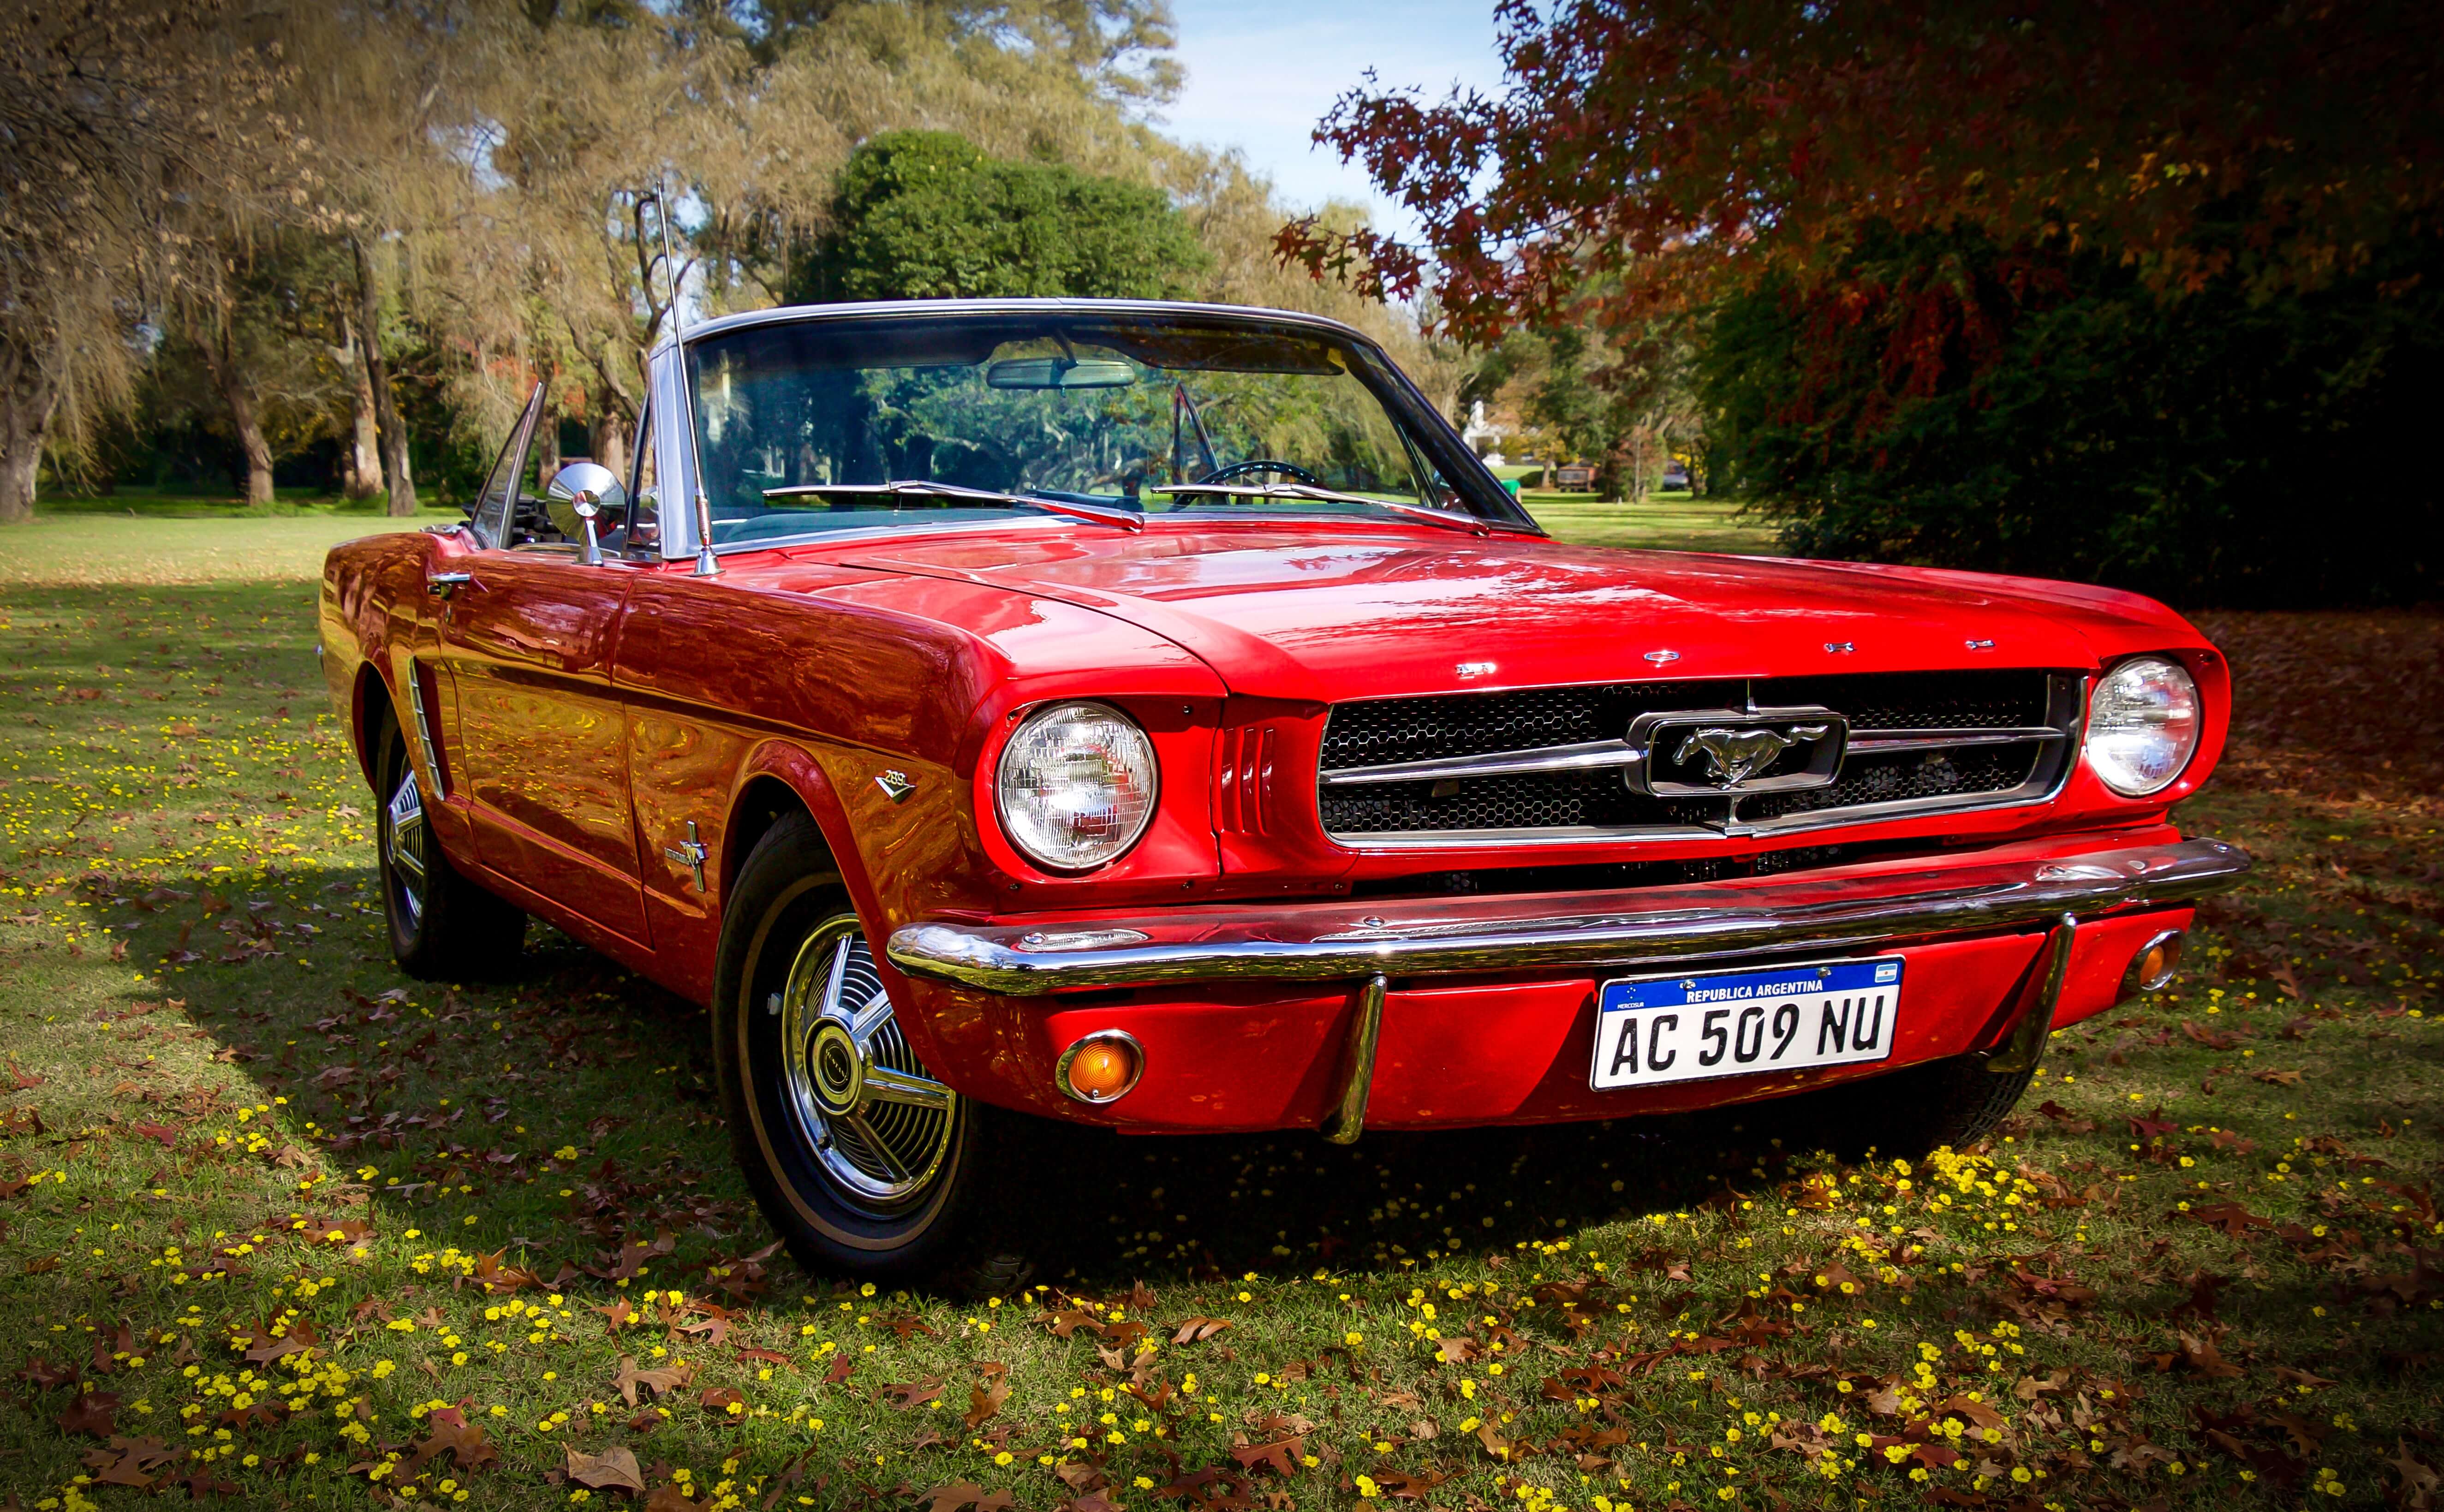 Una imagen que muestra un Mustang clásico de color rojo vibrante, un muscle car americano icónico, que destila potencia y elegancia con su elegante diseño y su atractivo atemporal.